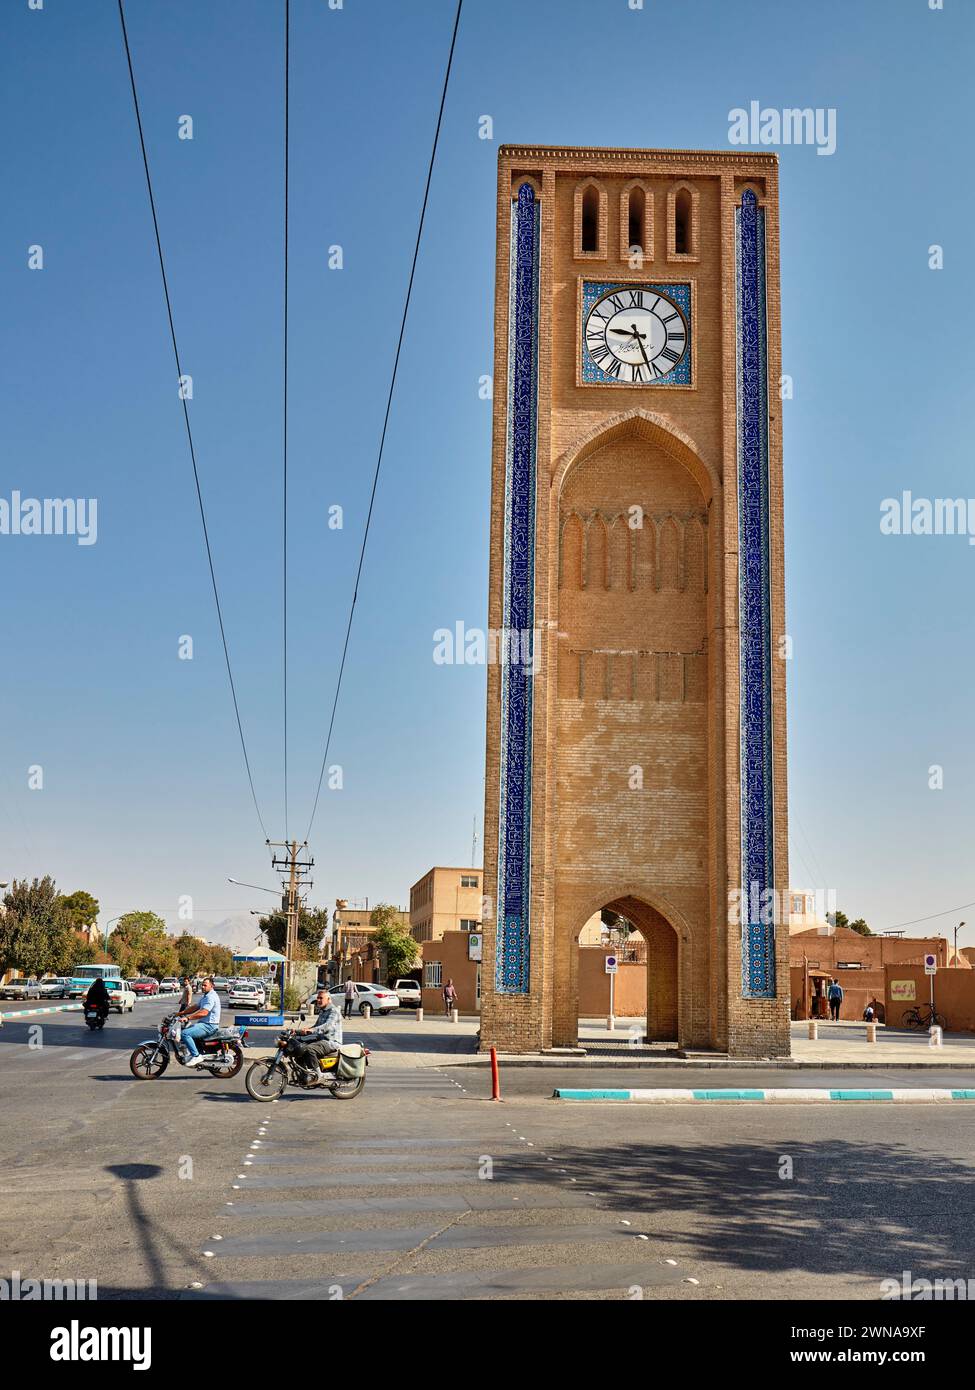 La Tour de l'horloge sur la place Al-Saat (place de l'horloge), l'une des plus anciennes tours de l'horloge en Iran et dans le monde. Yazd, Iran. Banque D'Images